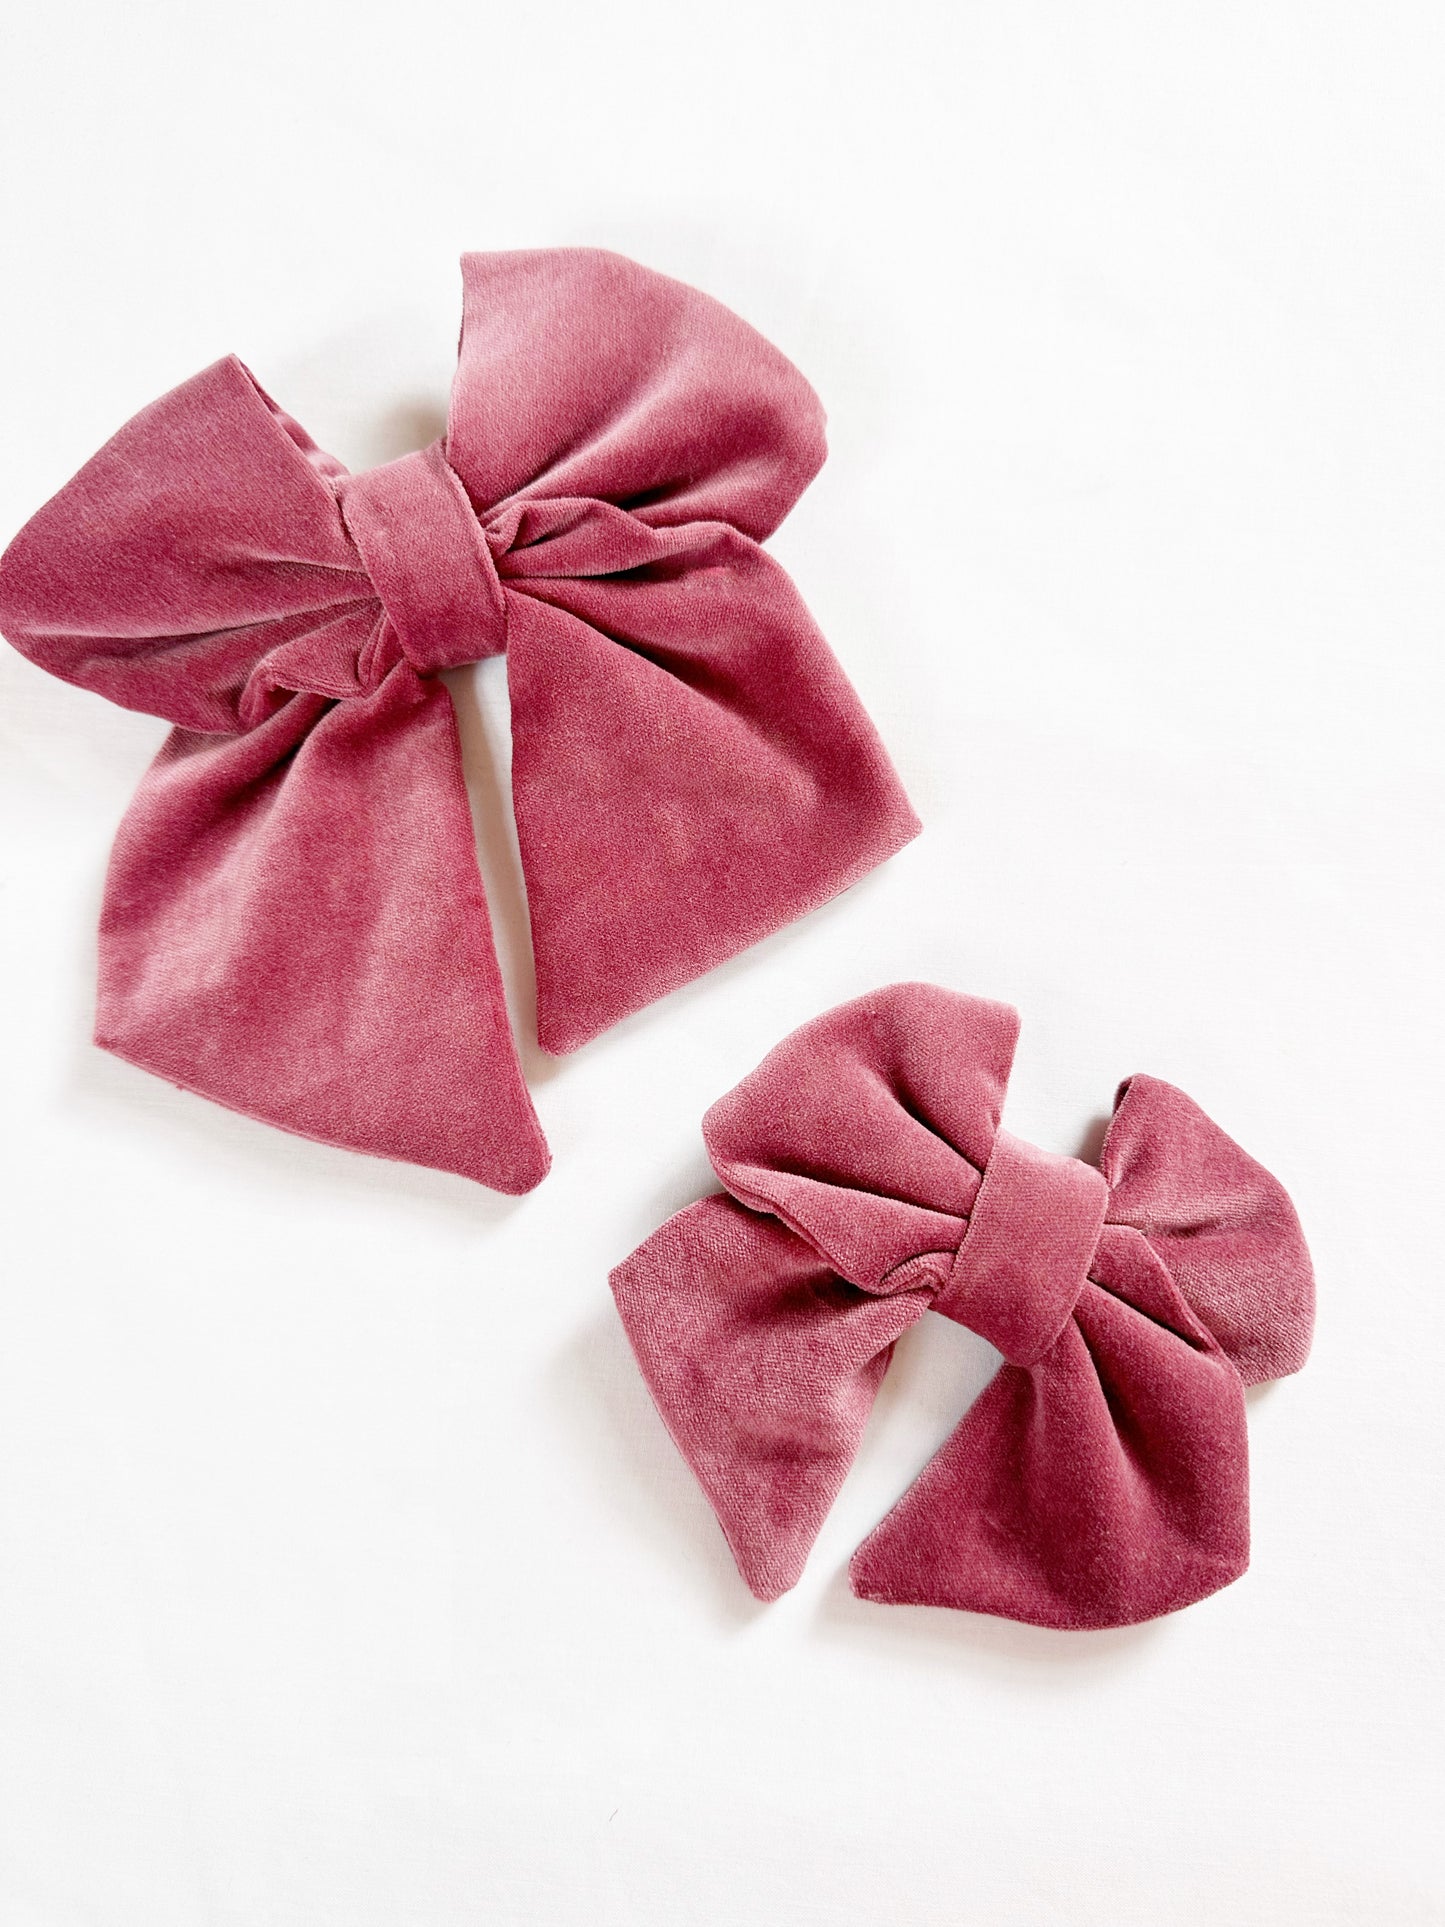 Hair Bow gift set in antique rose velvet